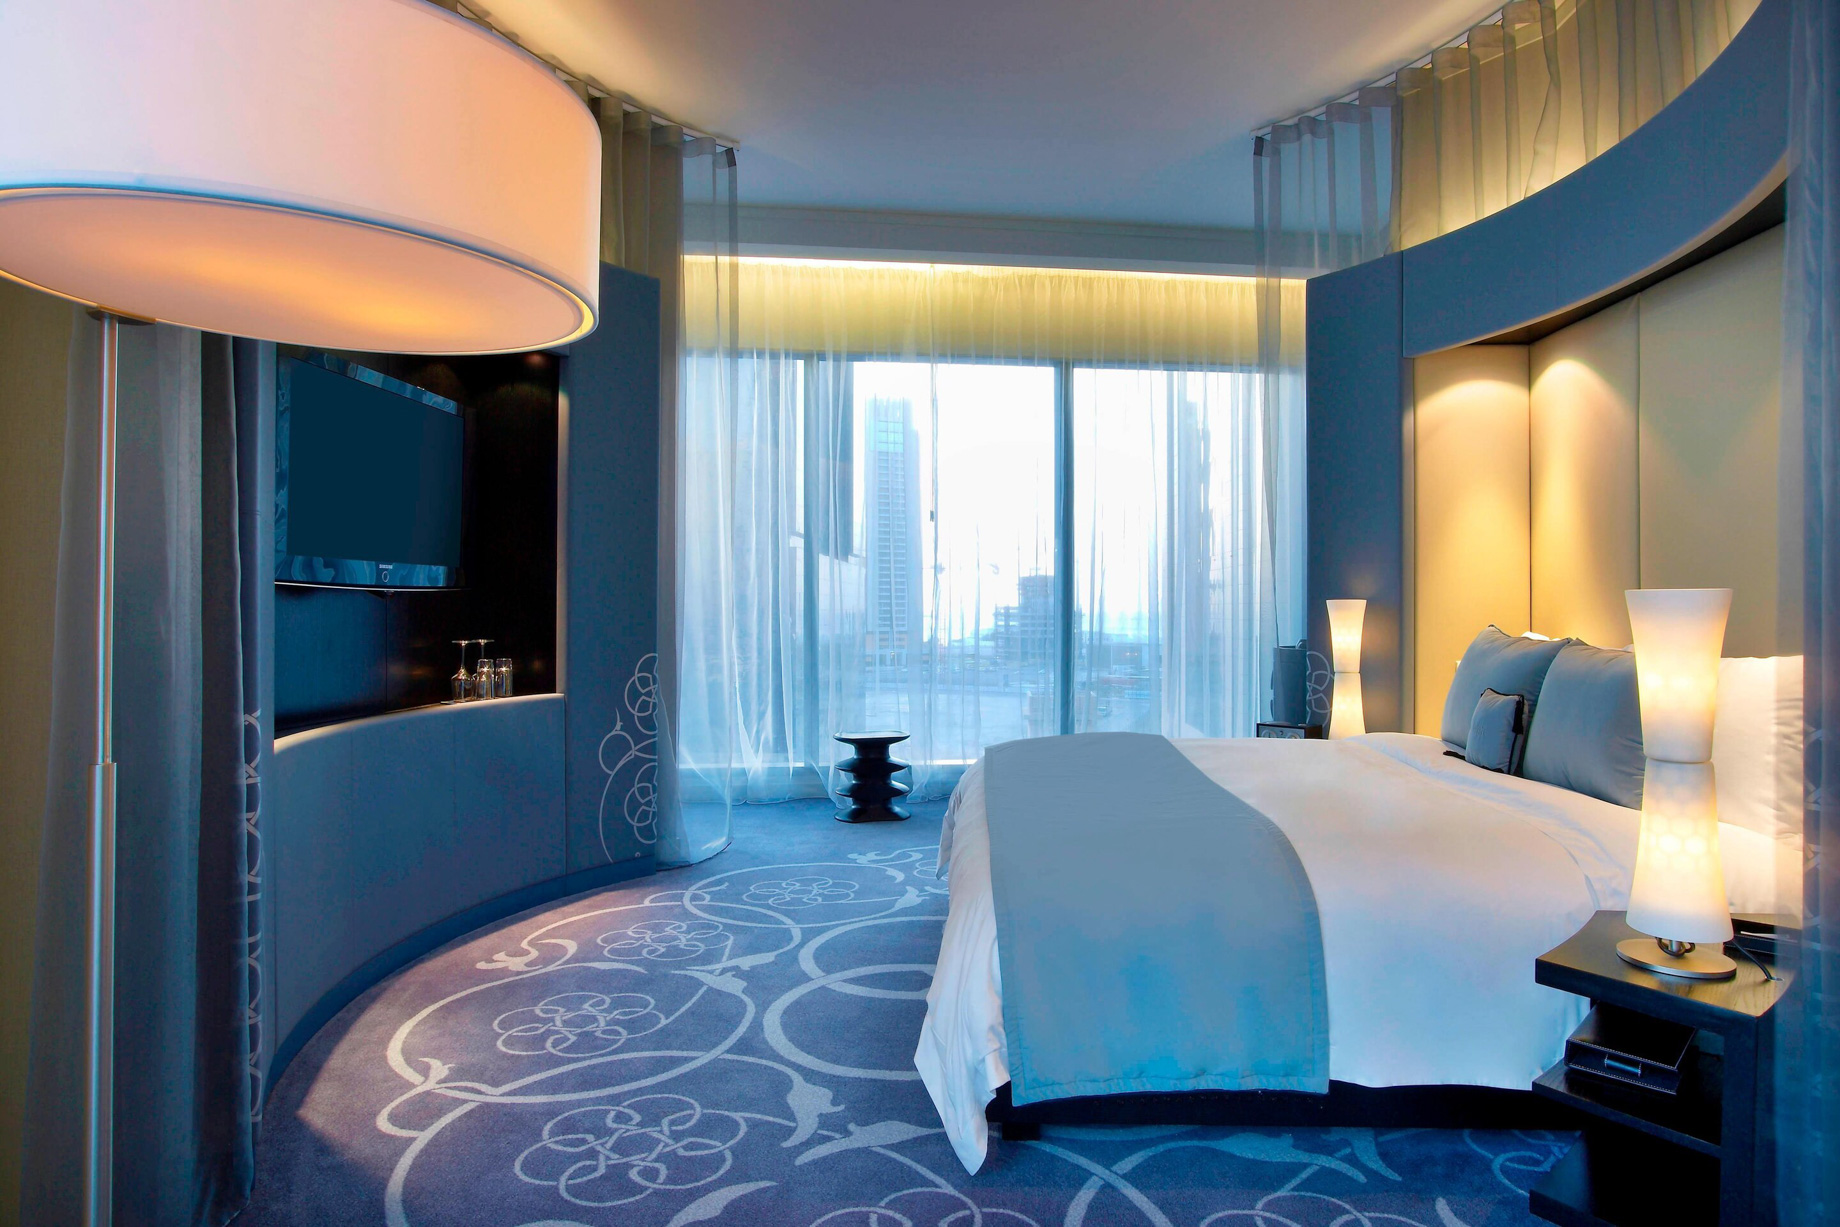 W Doha Hotel – Doha, Qatar – Spectacular Room Bedroom